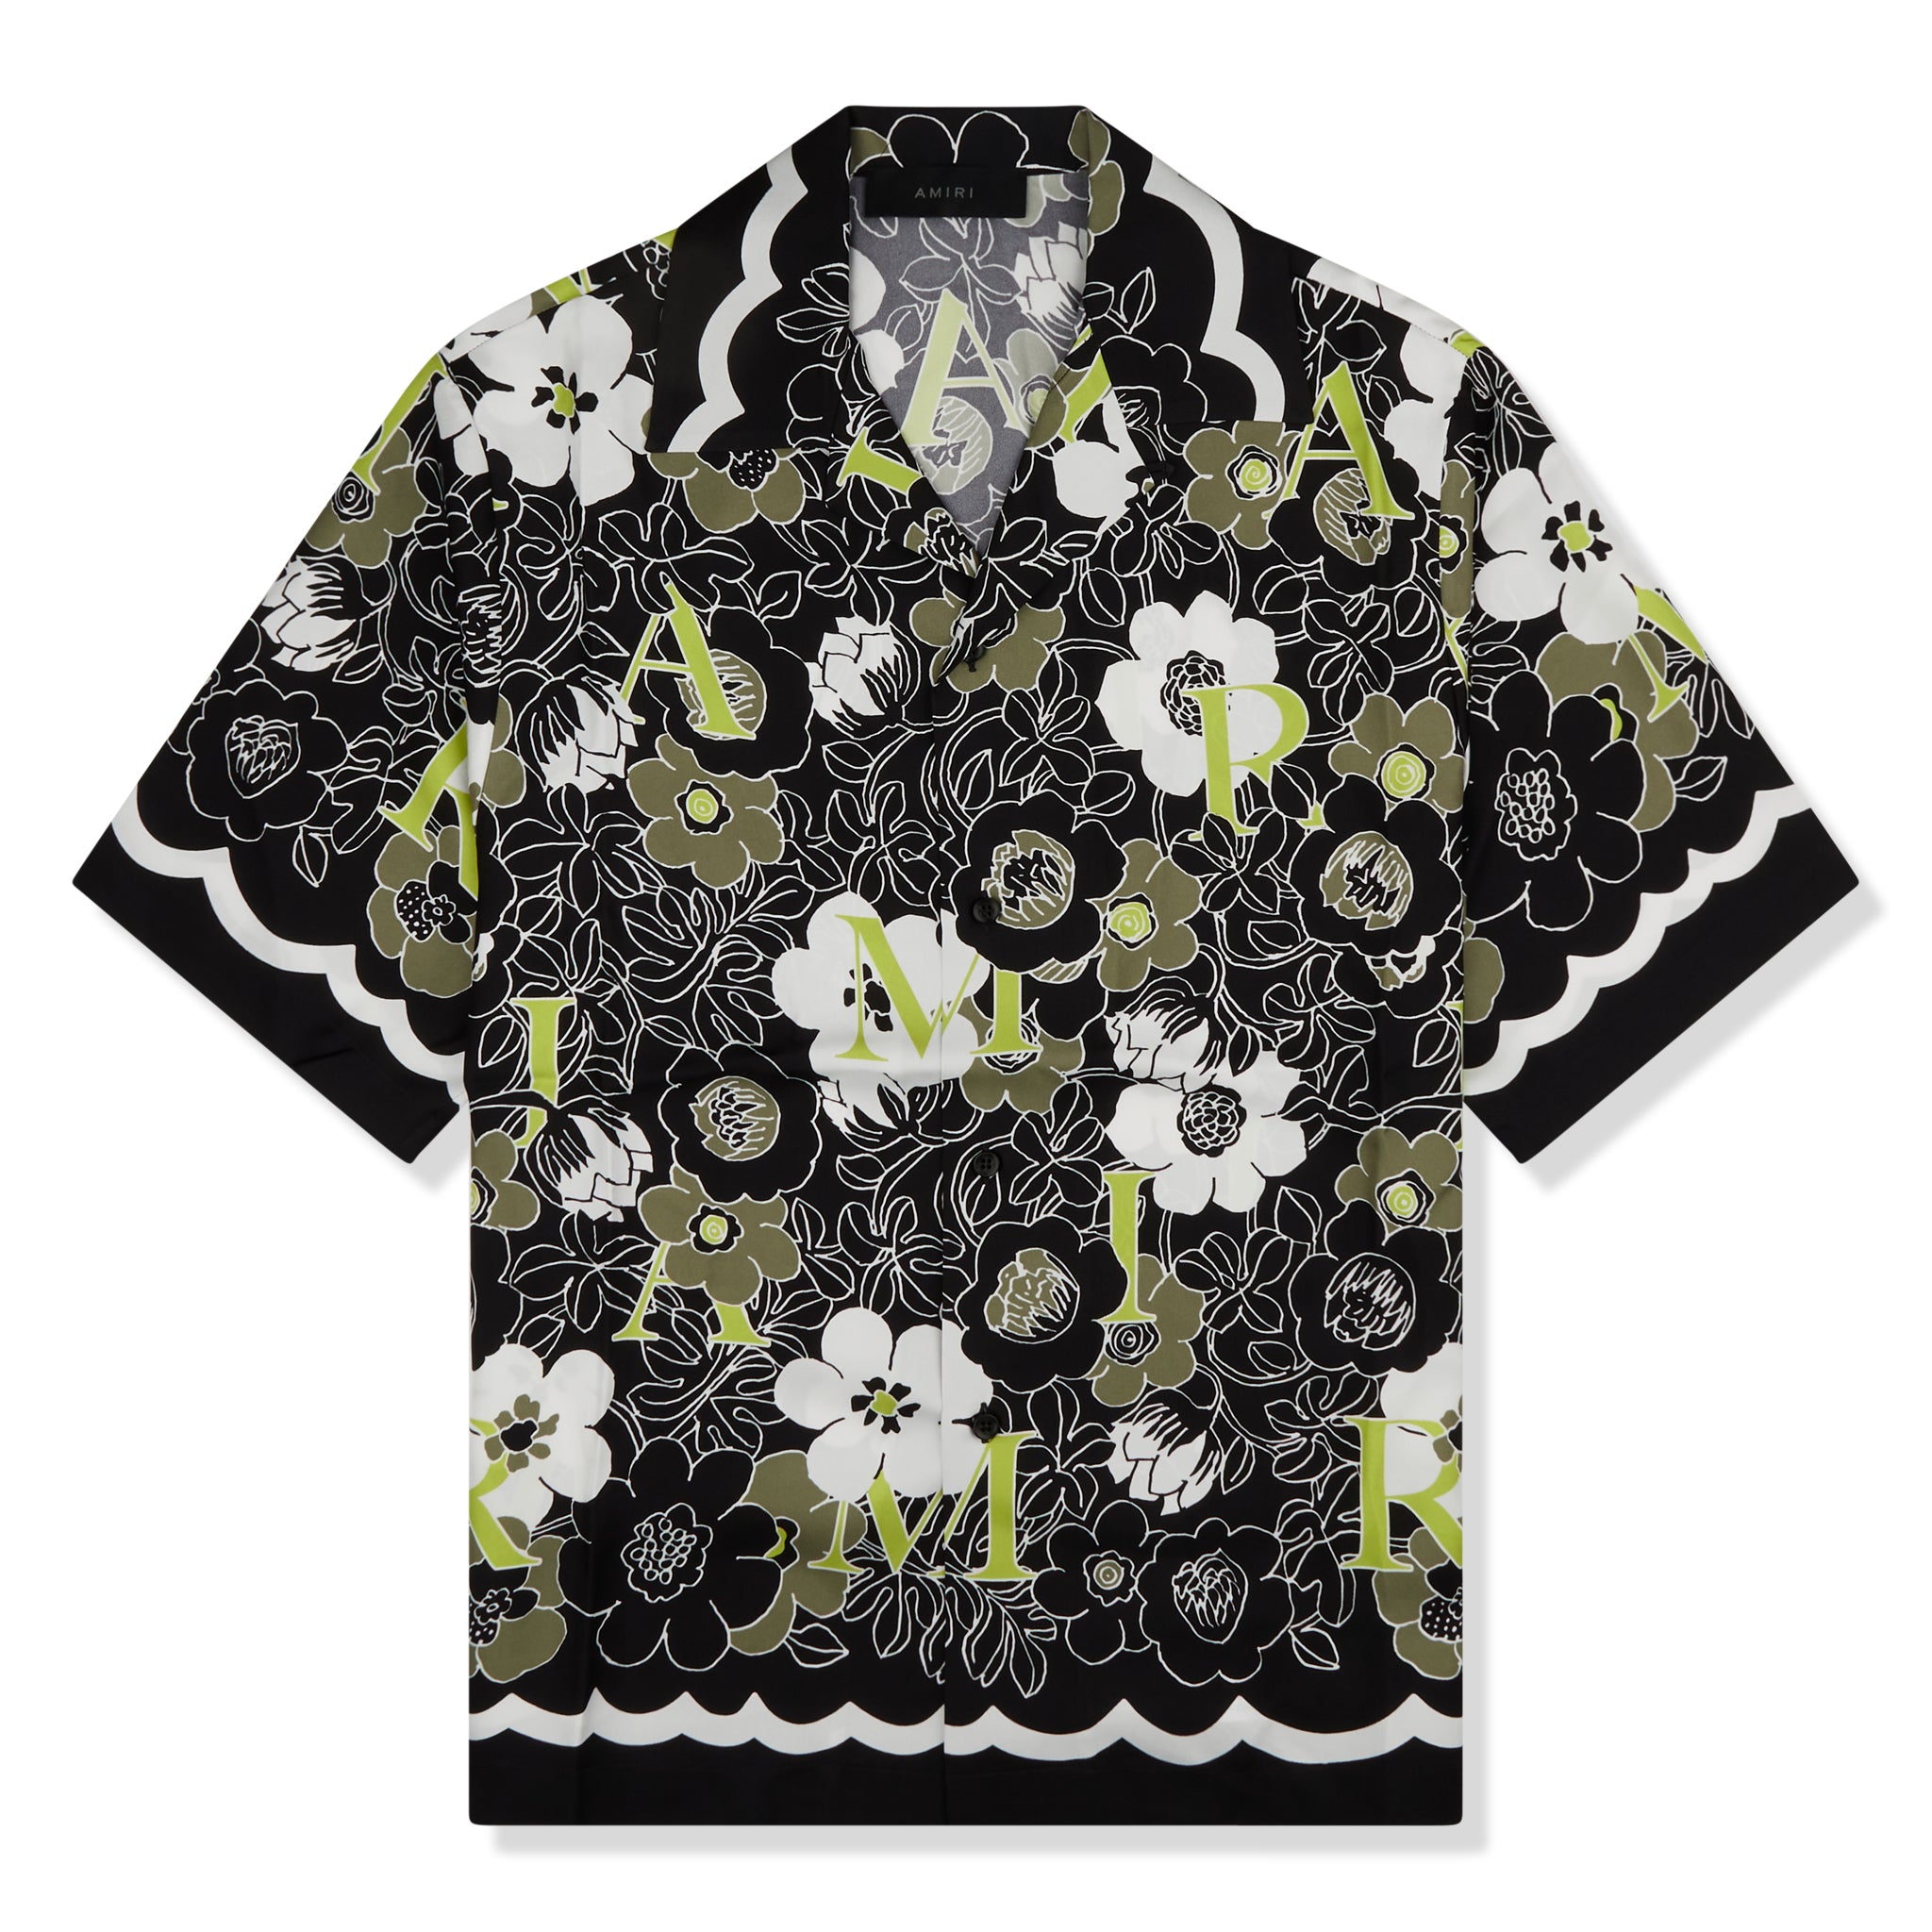 Louis Vuitton - Authenticated Sweatshirt - Cotton Multicolour Floral for Men, Never Worn